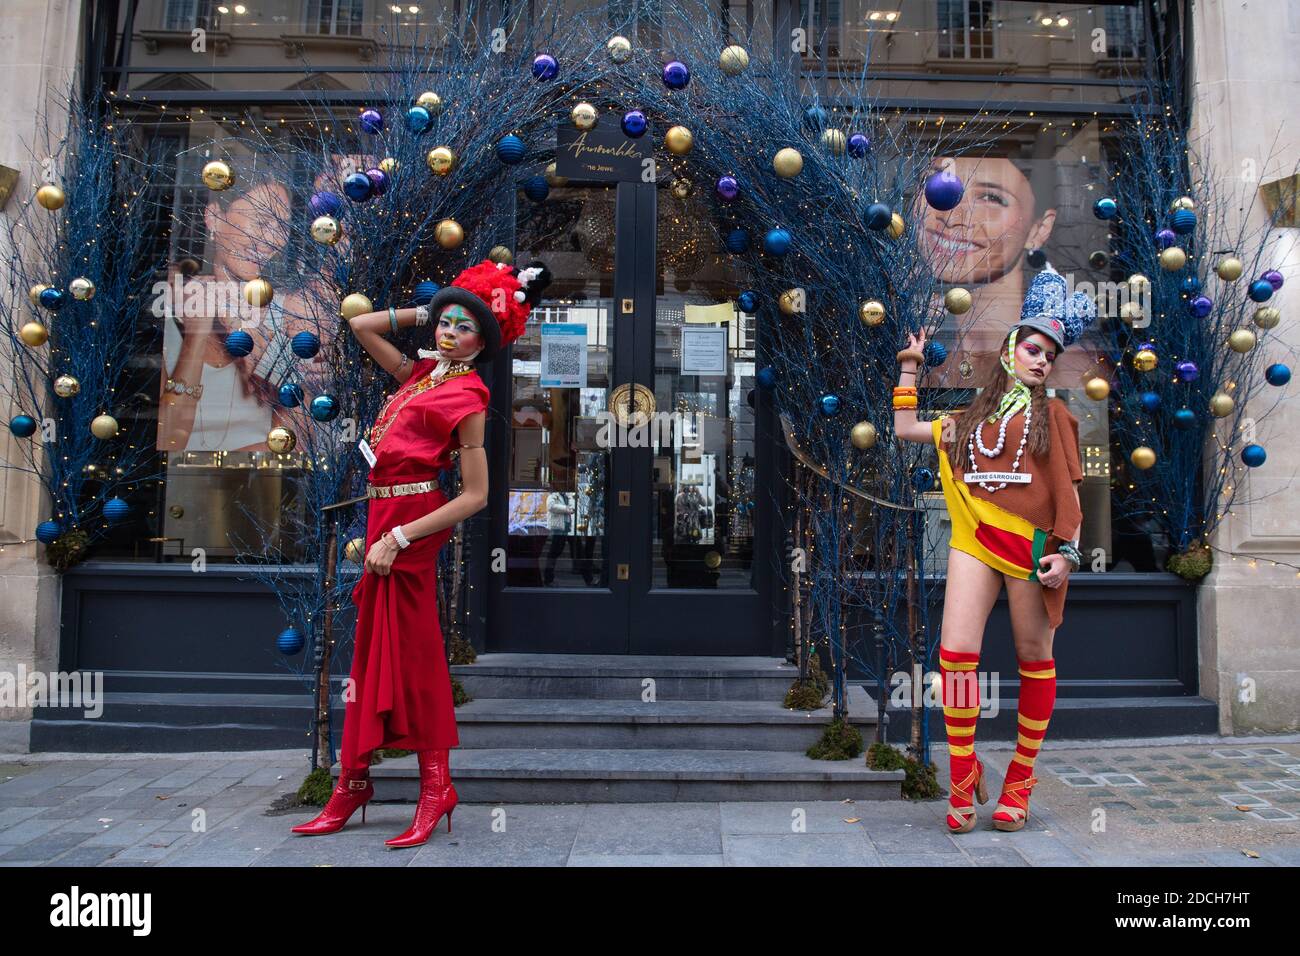 I modelli si levano in piedi fra le decorazioni di Natale mentre mettono in mostra i vestiti dallo stilista Pierre Garroudi, durante una ripresa di moda di flashmob su Oxford Street, Londra. Foto Stock